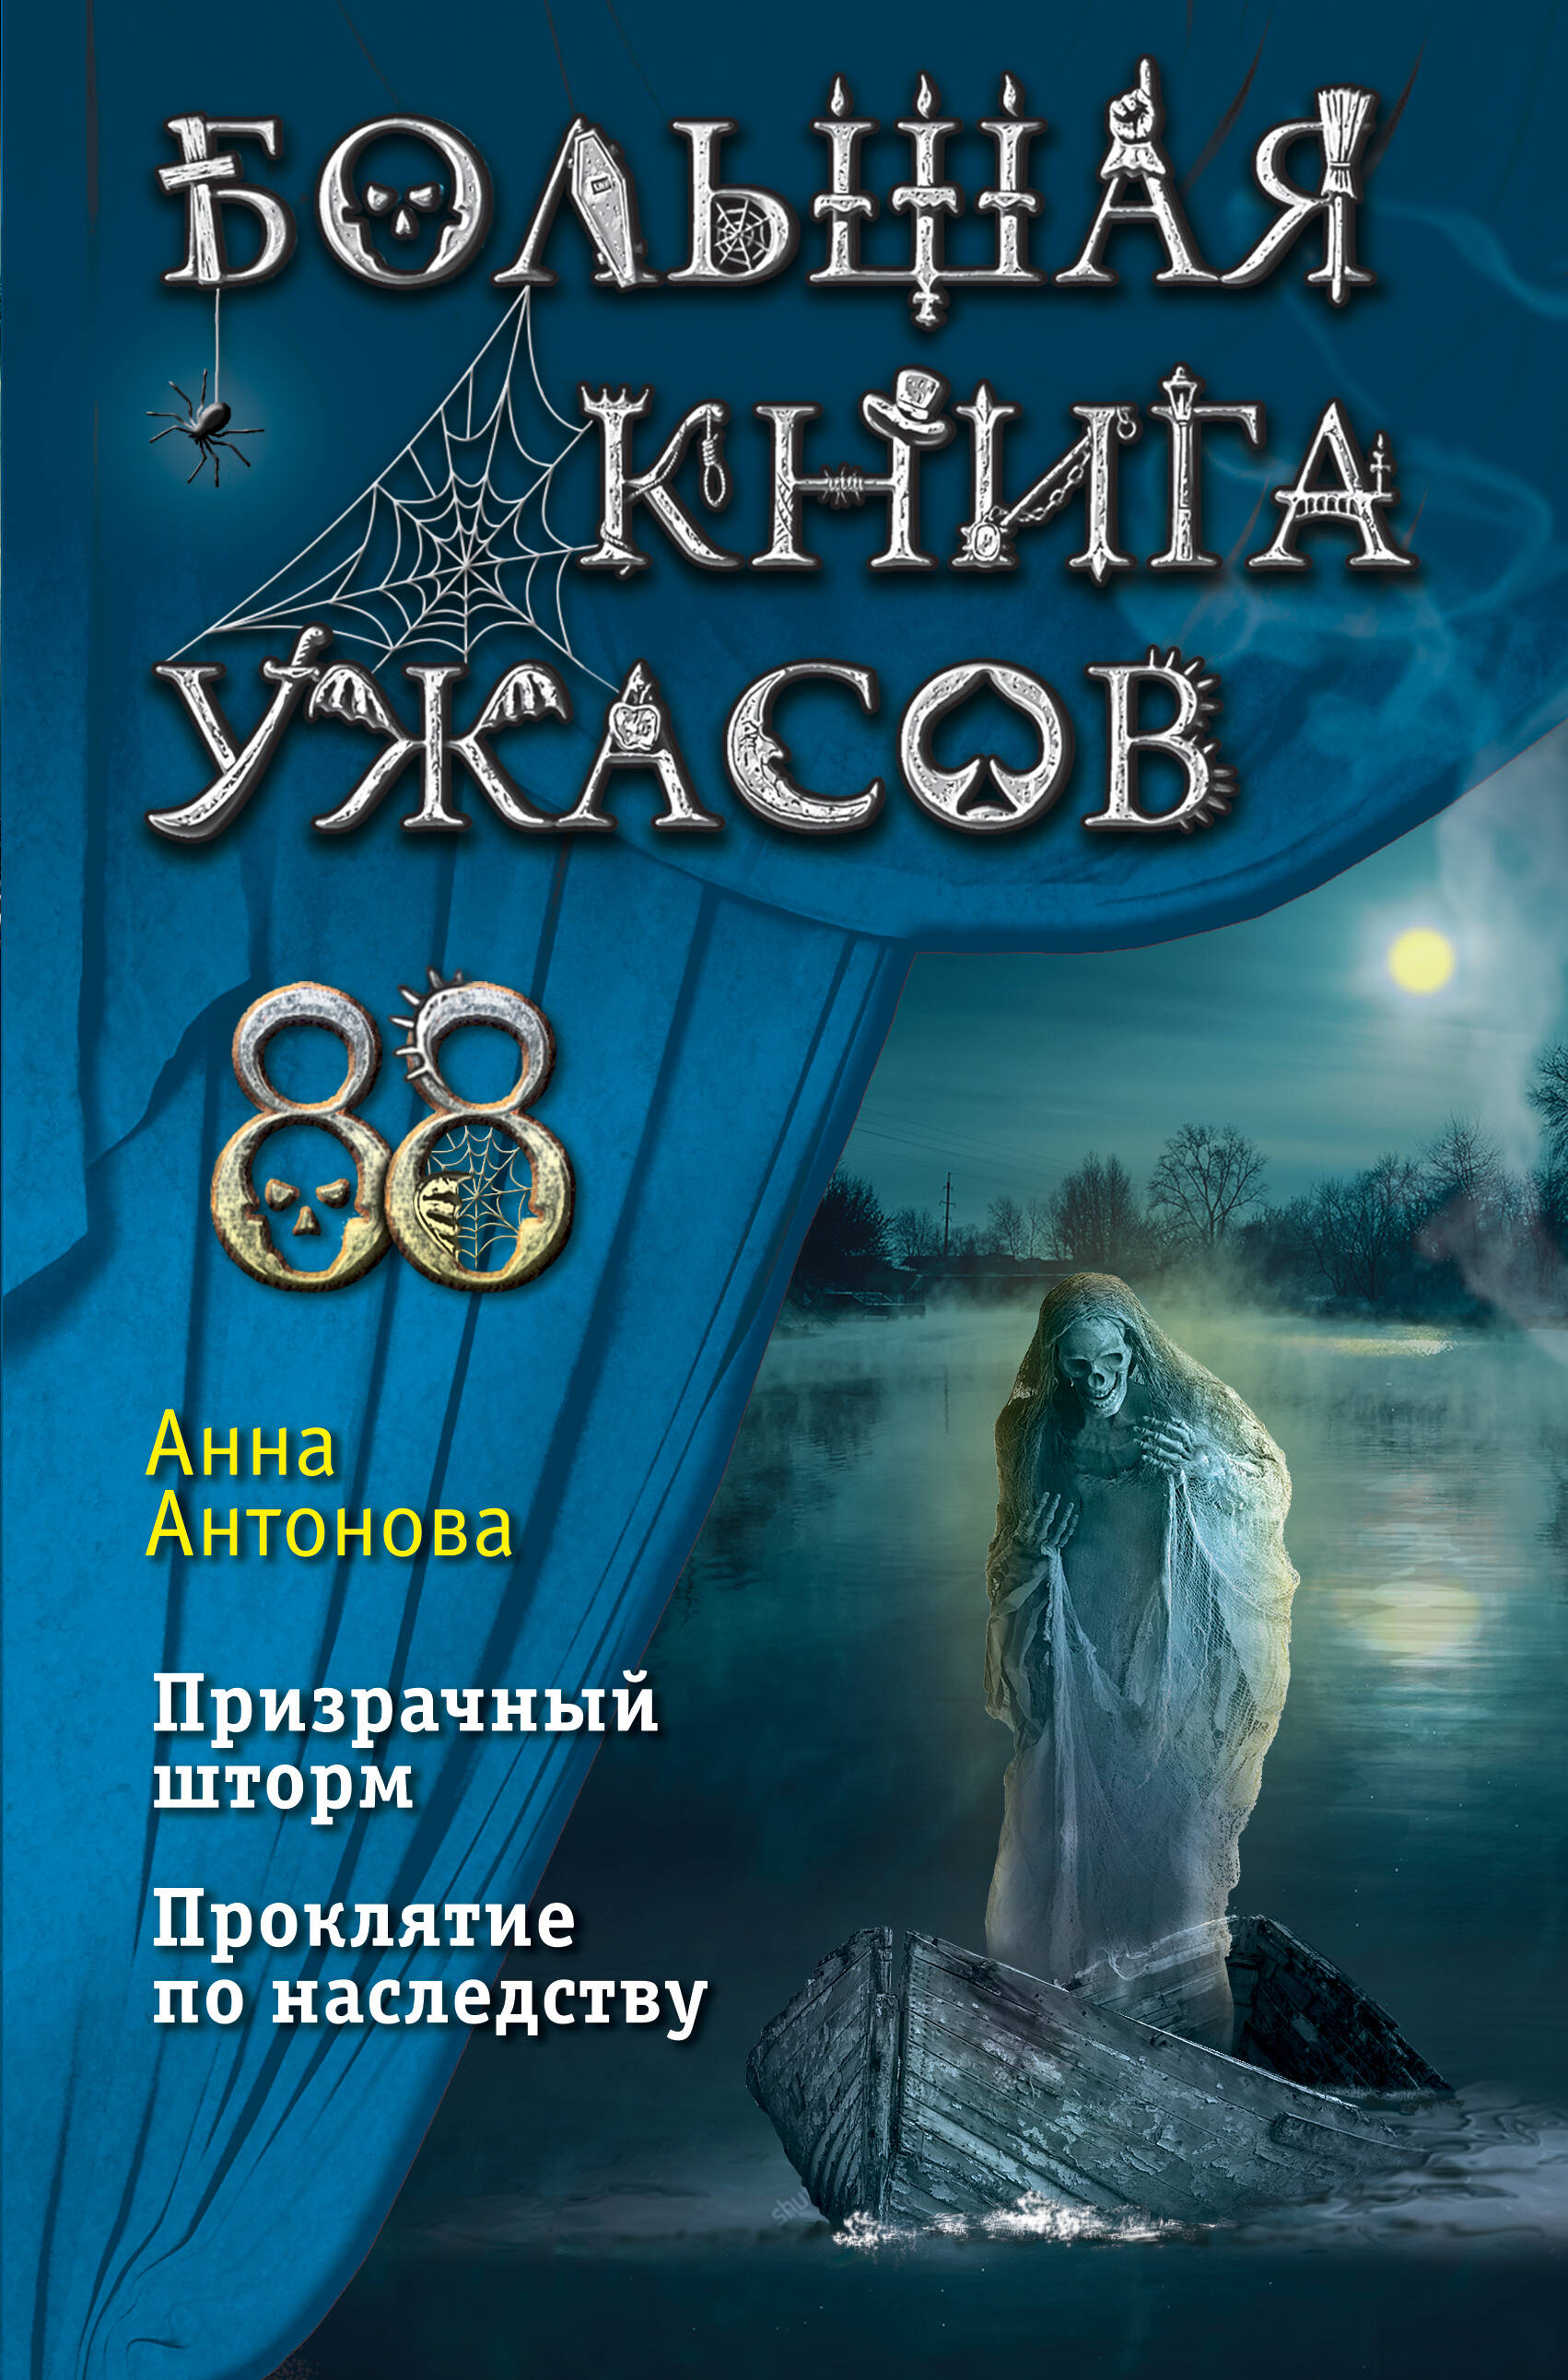 Антонова Анна Евгеньевна Большая книга ужасов 88